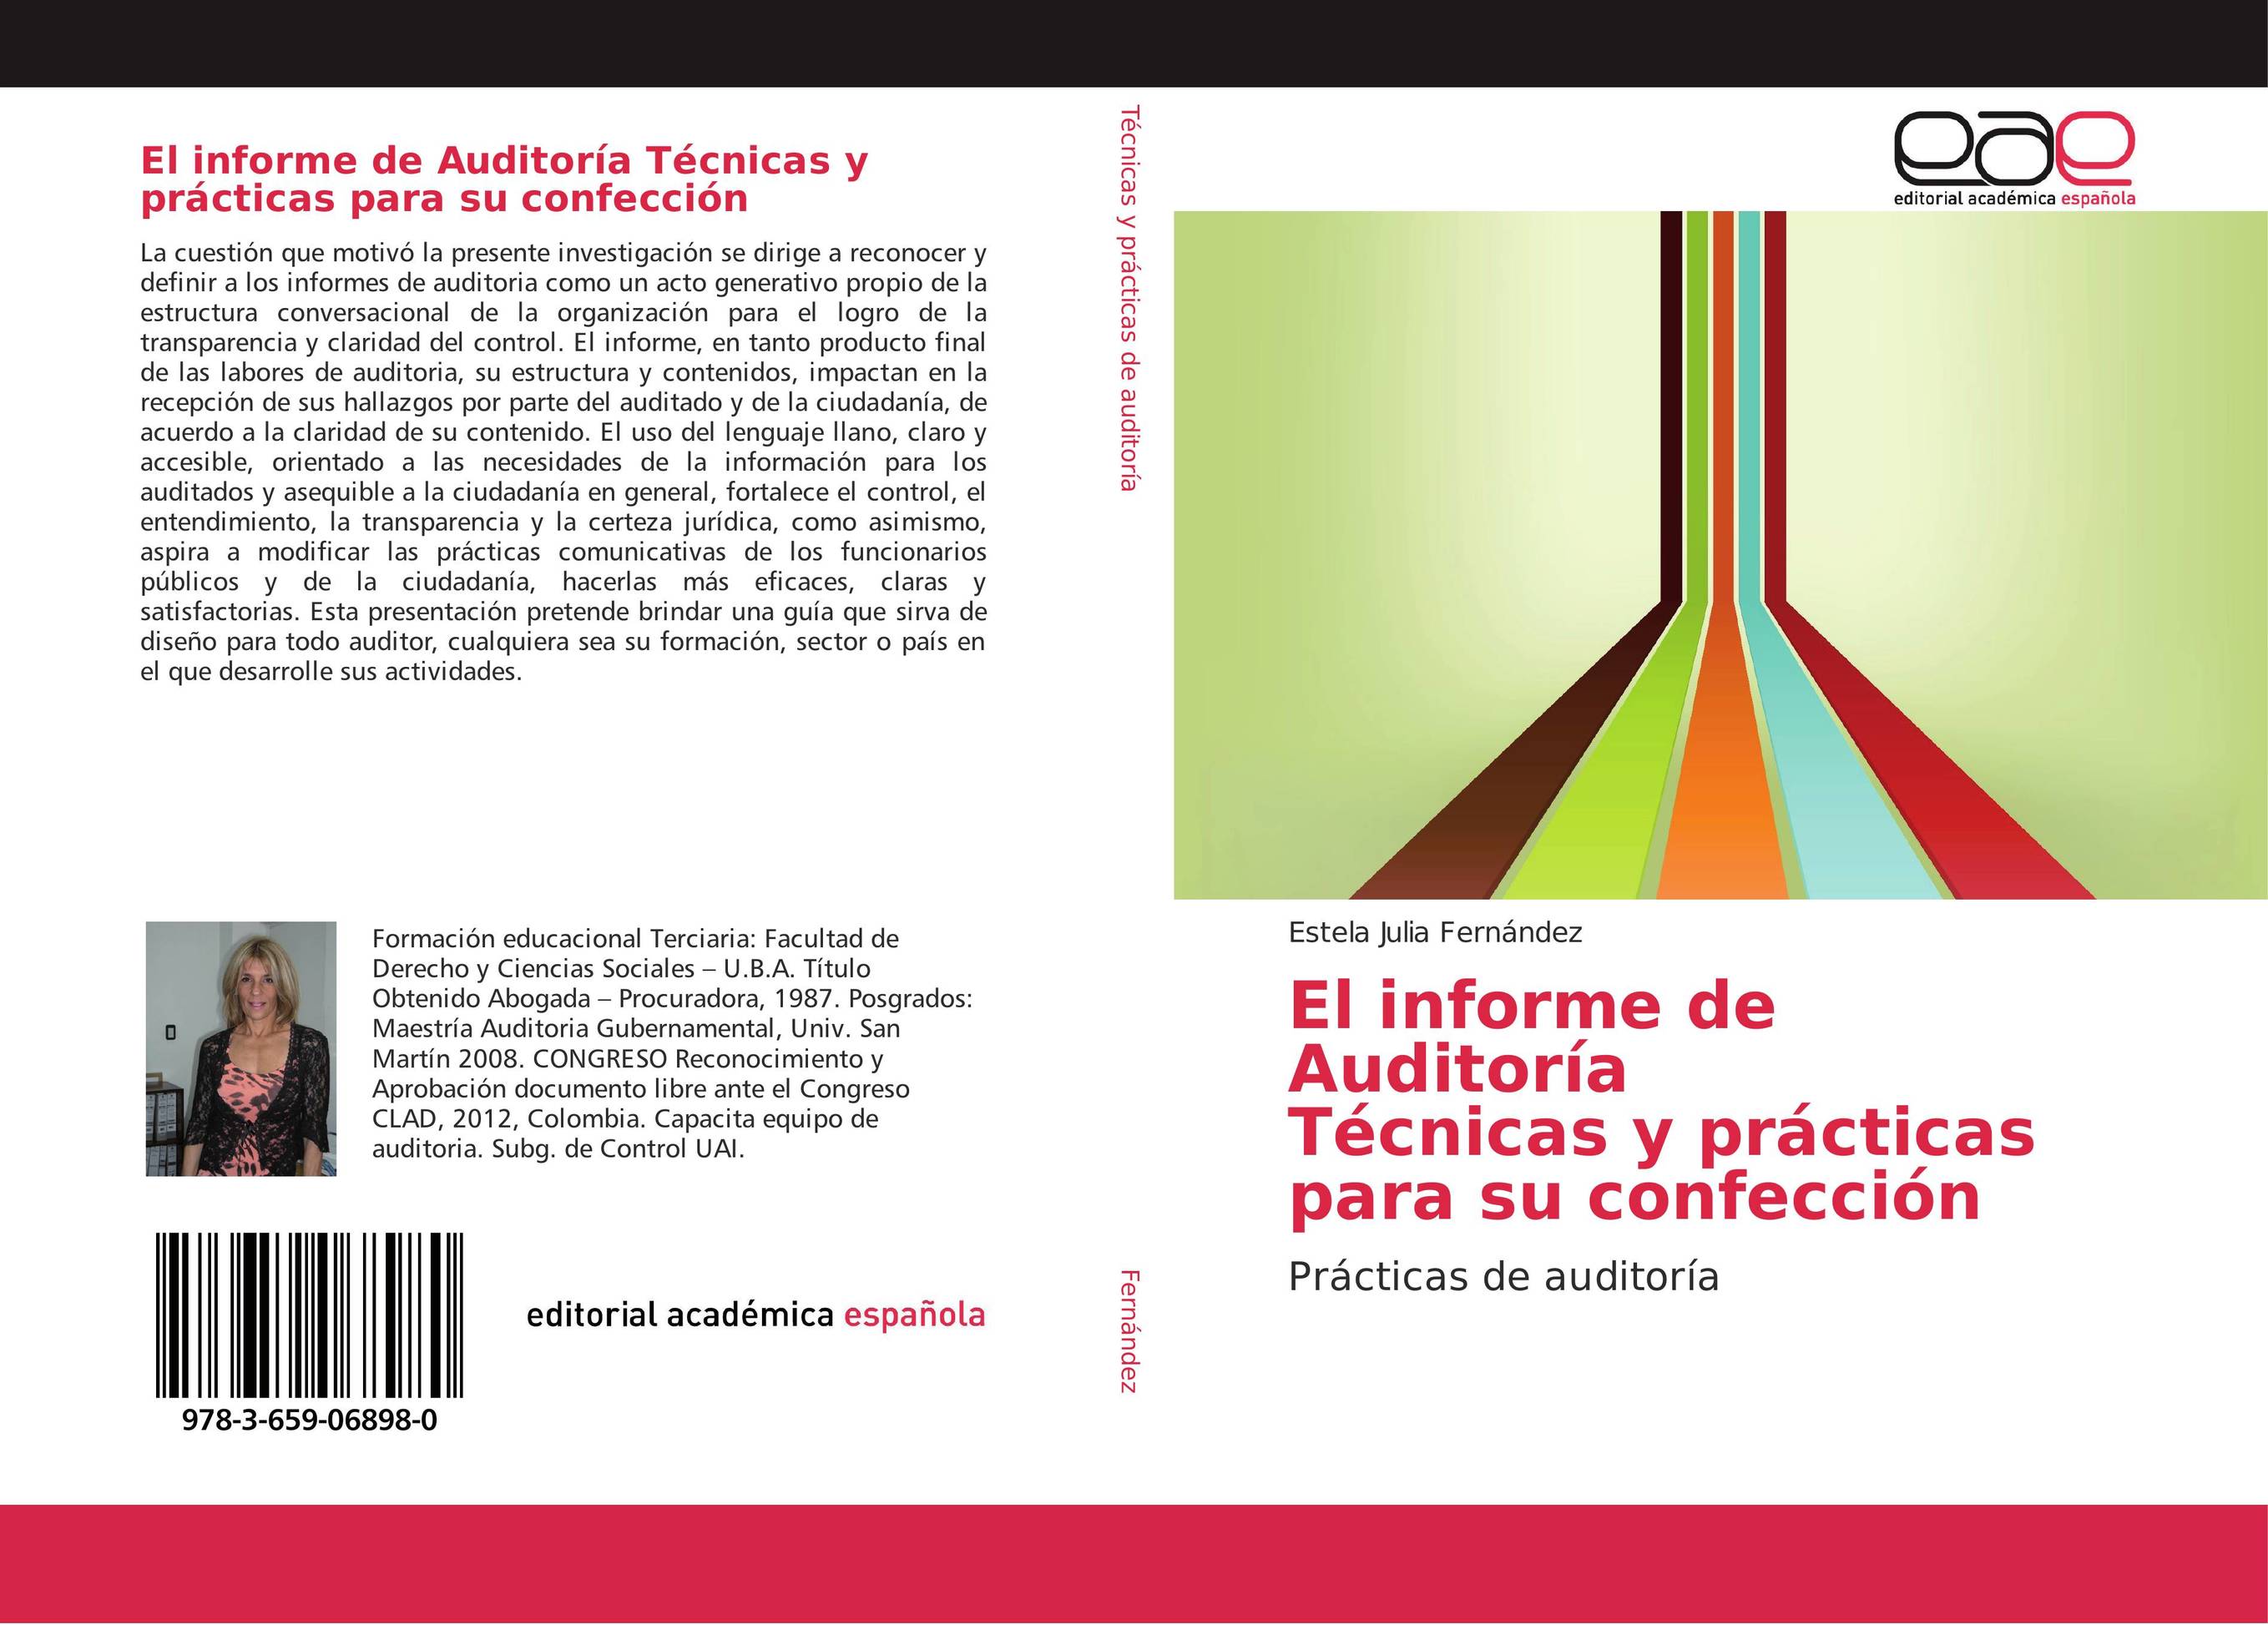 El informe de Auditoría   Técnicas y prácticas para su confección